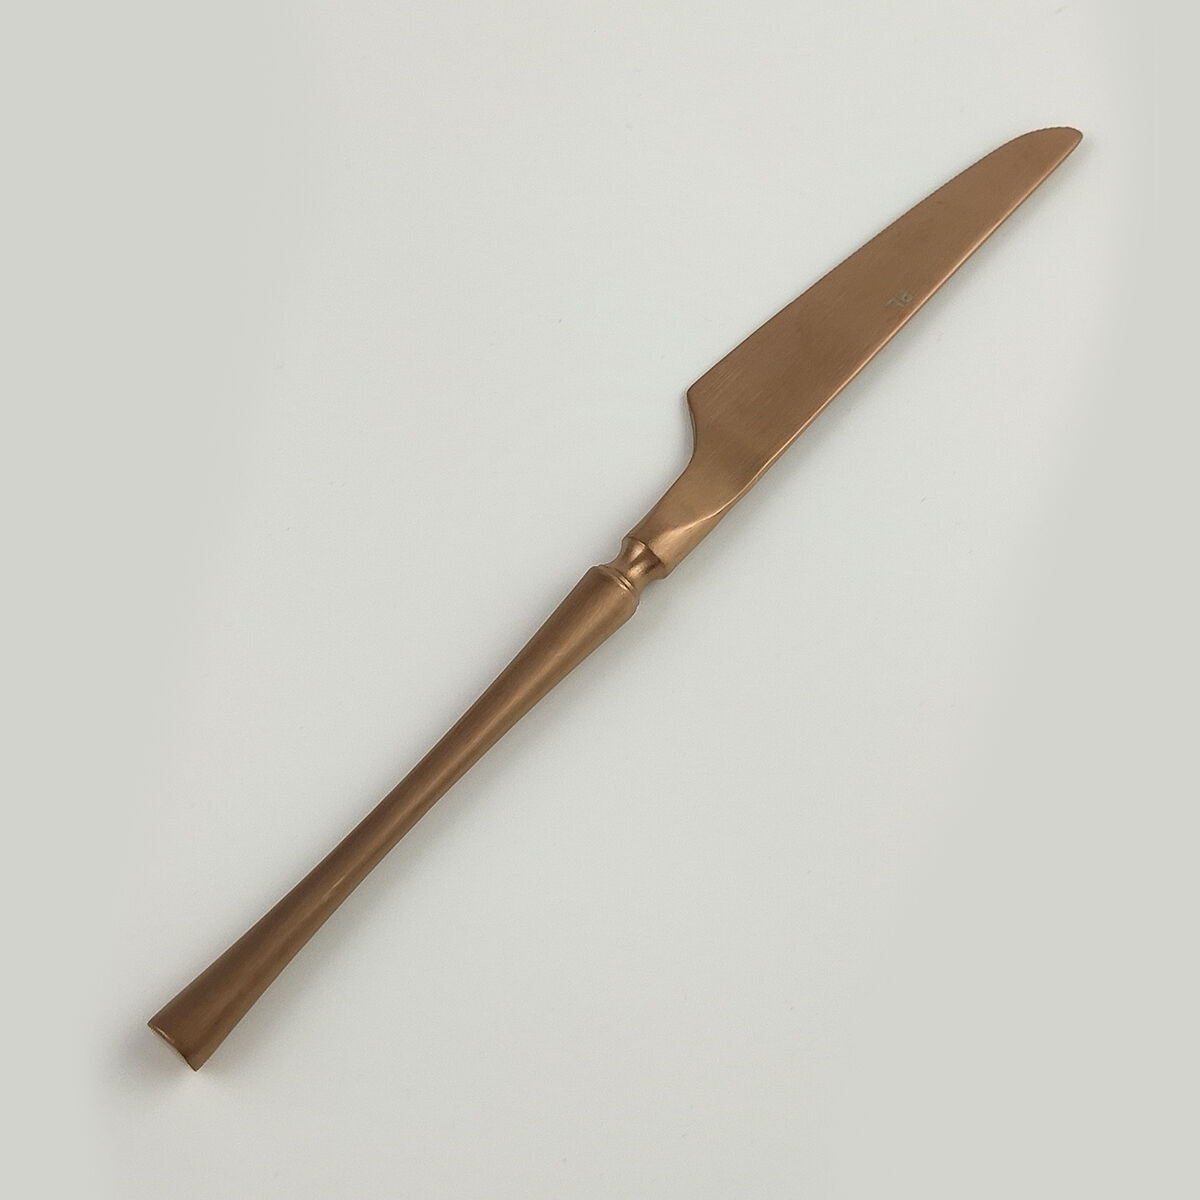 Нож столовый, PVD покрытие, медный матовый цвет, серия "1920-Copper" P.L.